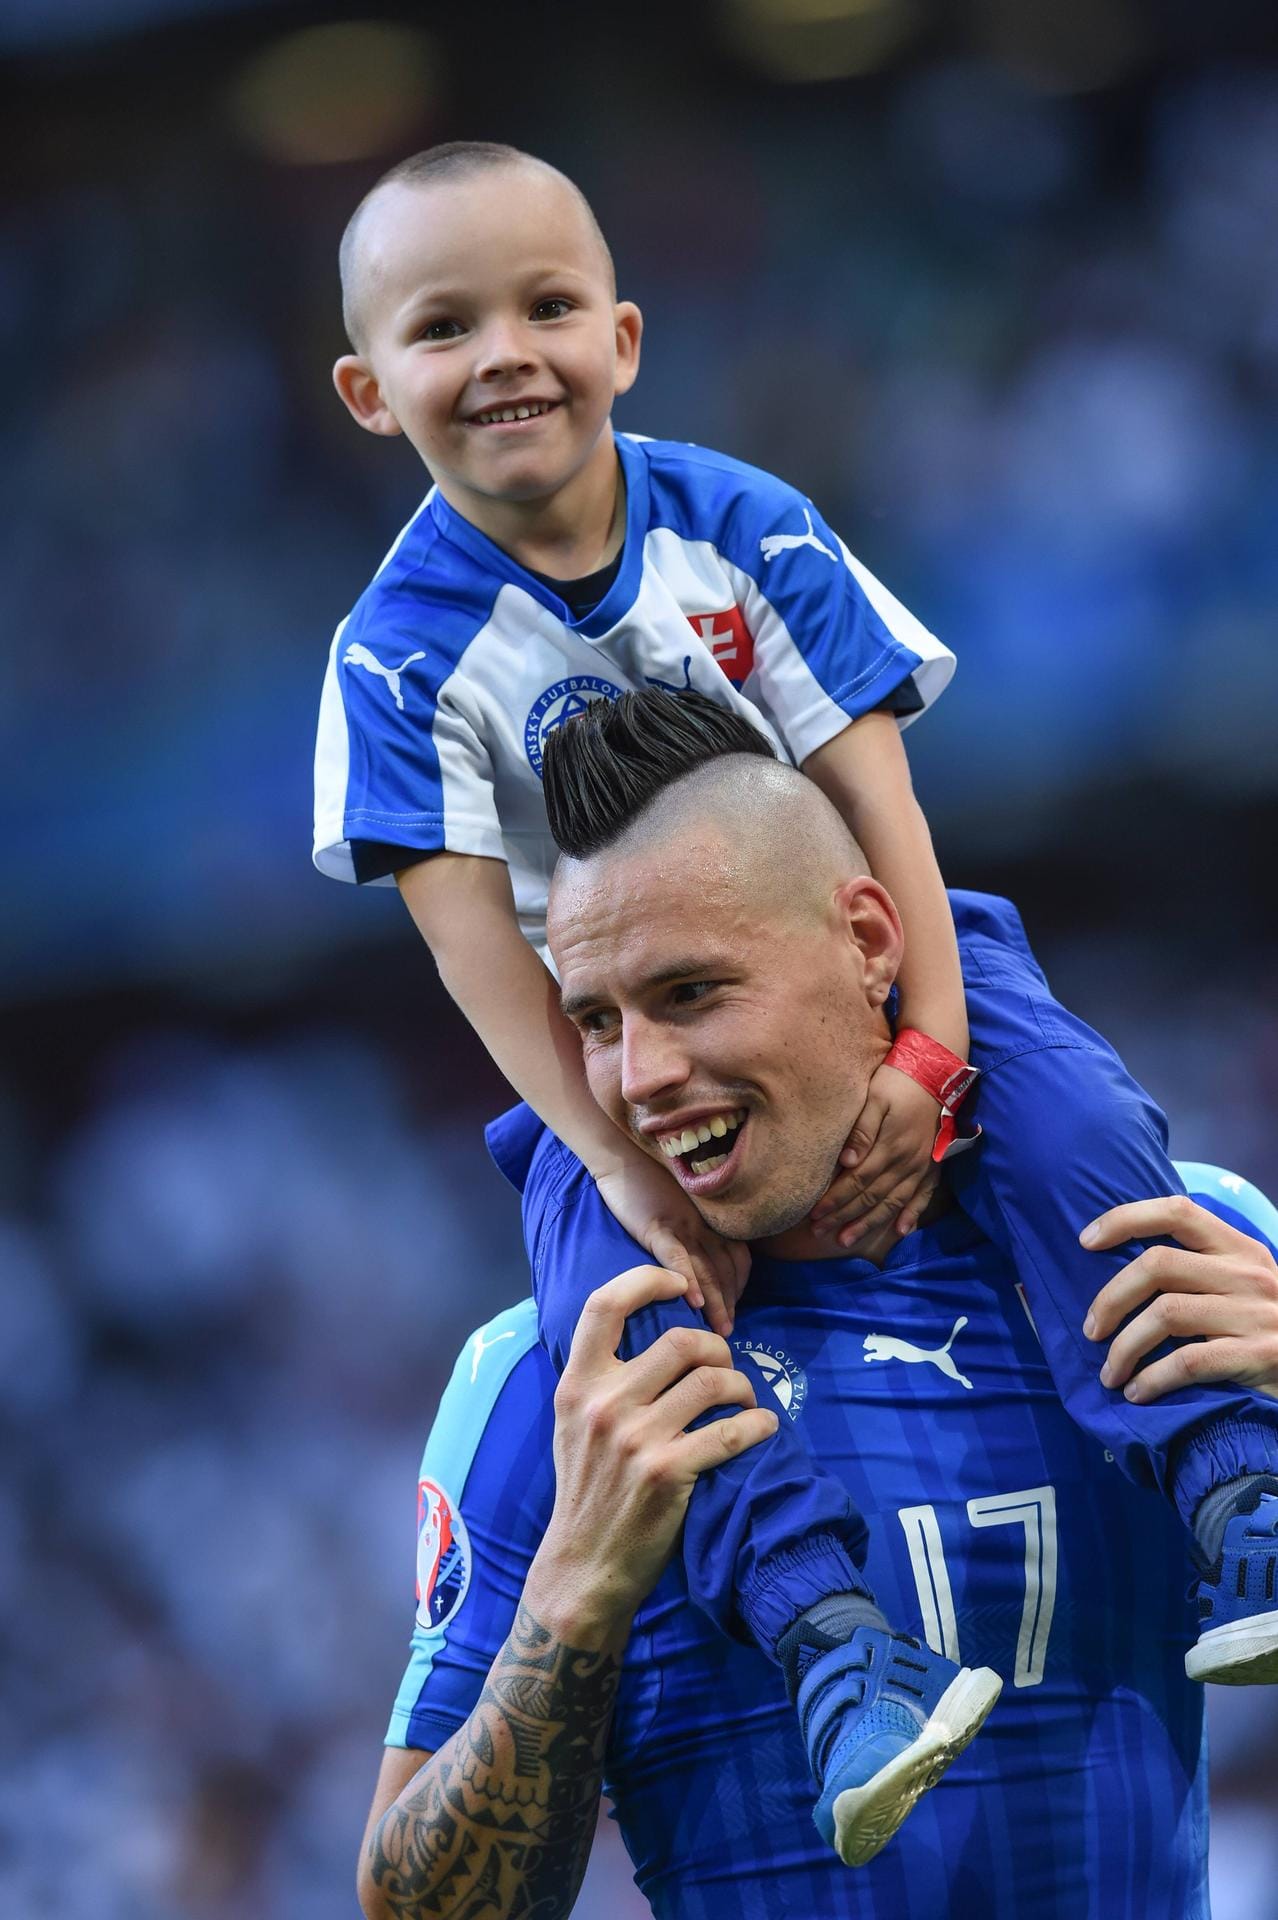 Der Sohn des slowakischen Nationalspielers Marek Hamsik eifert seinem Papa nach - was Fußball und Frisur angeht.ildren June 26 2016 Football UEFA EURO EM Europameisterschaft Fussb